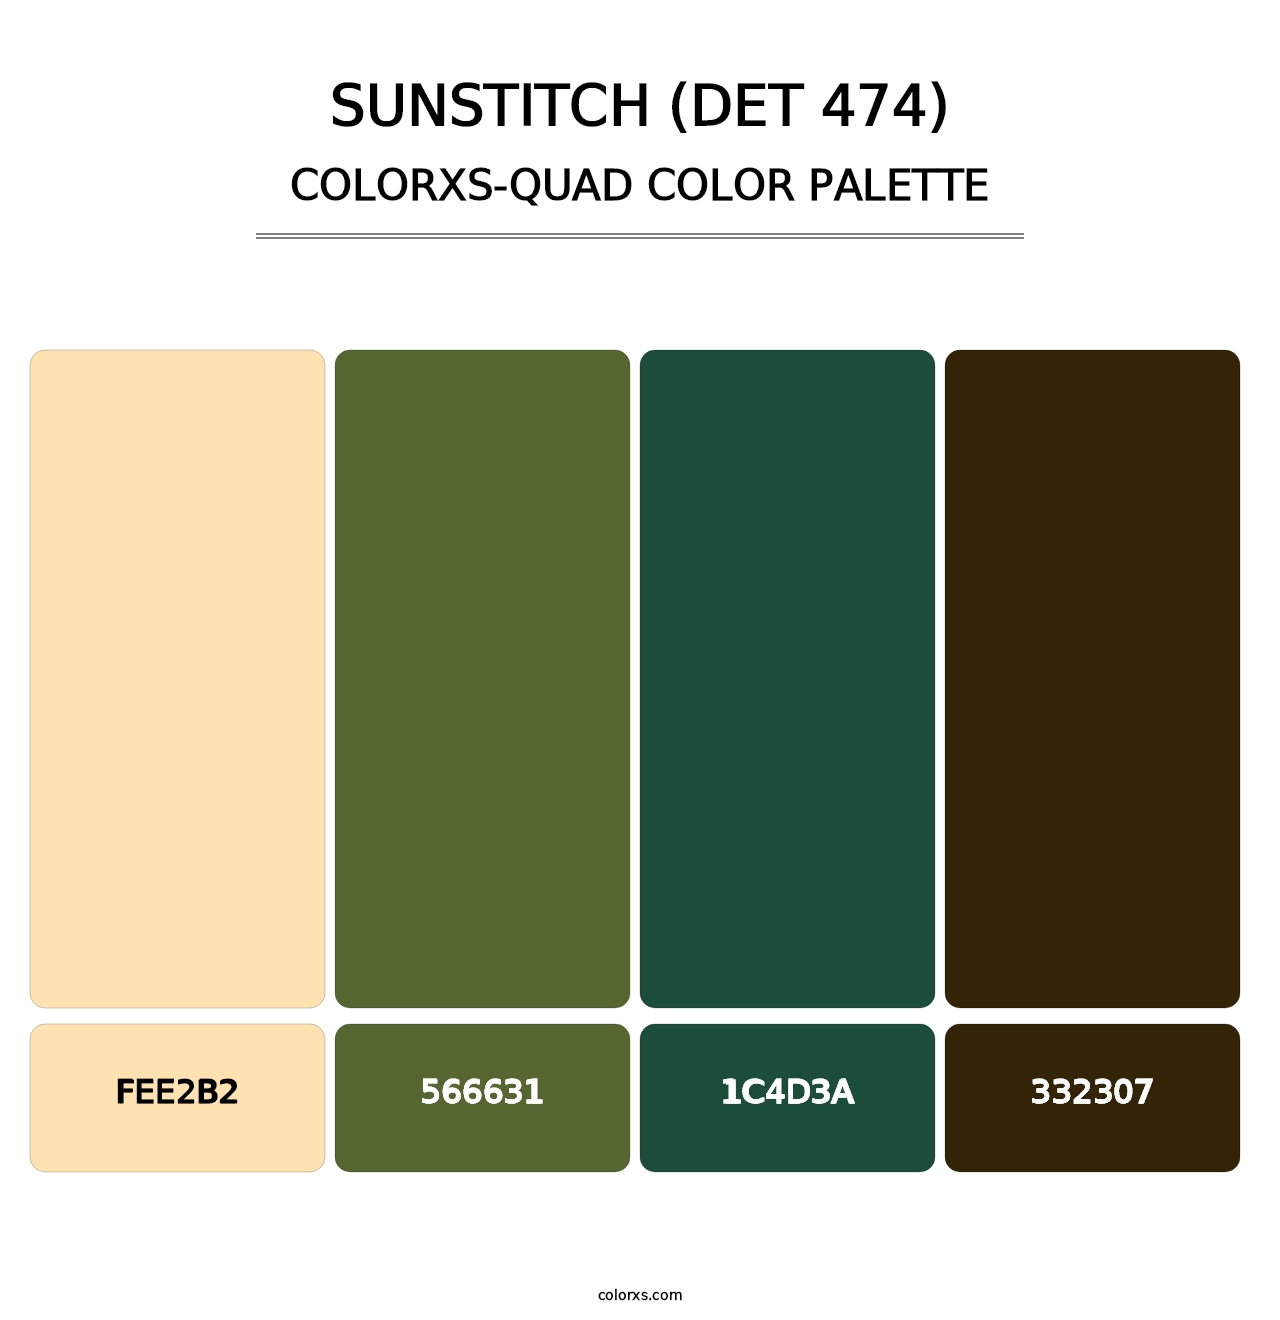 Sunstitch (DET 474) - Colorxs Quad Palette